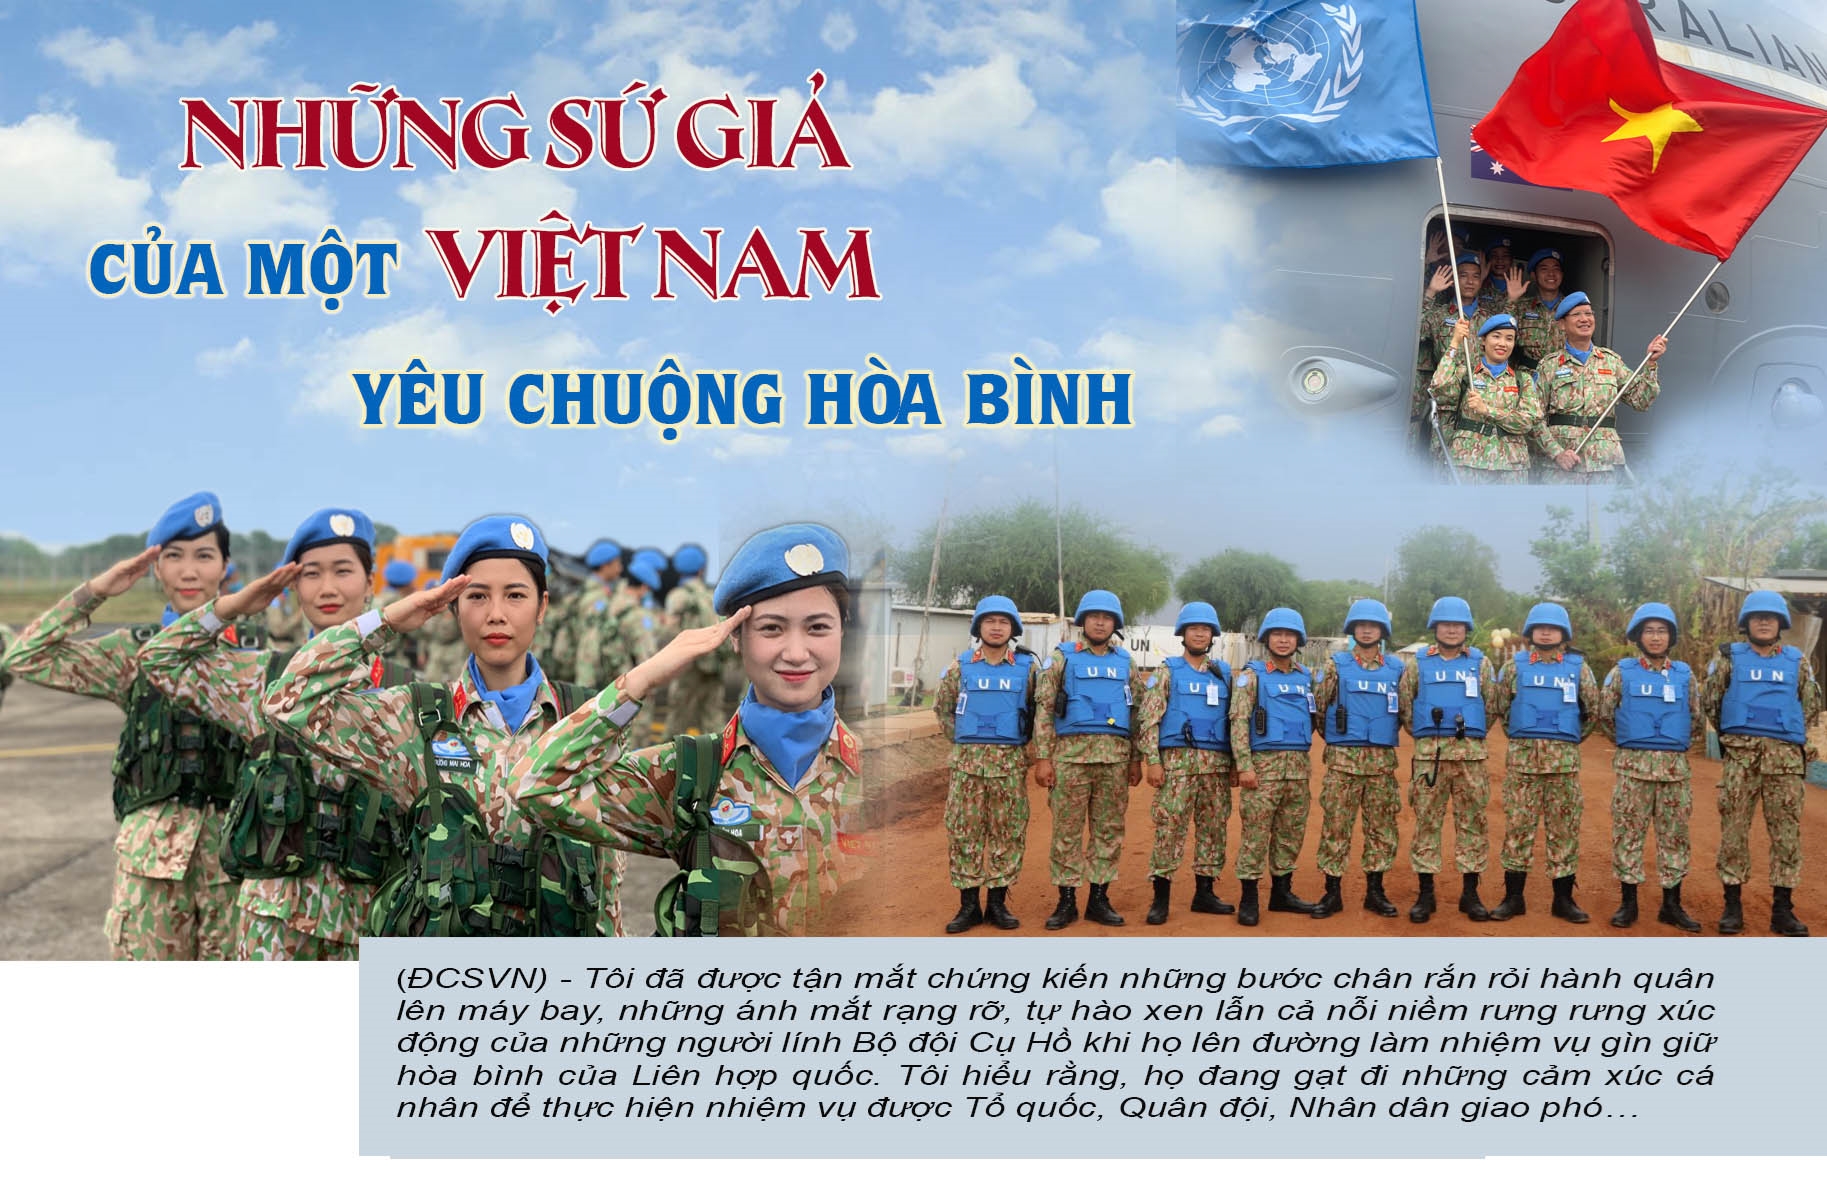 Công binh Việt Nam - Biểu tượng của sự can đảm và tinh thần dân tộc! Ảnh liệt kê các chiến công và đóng góp của các anh hùng công binh Việt Nam trong việc giữ gìn hòa bình và độc lập của đất nước. Hãy cùng ngắm nhìn bức ảnh tôn vinh những người hùng này.